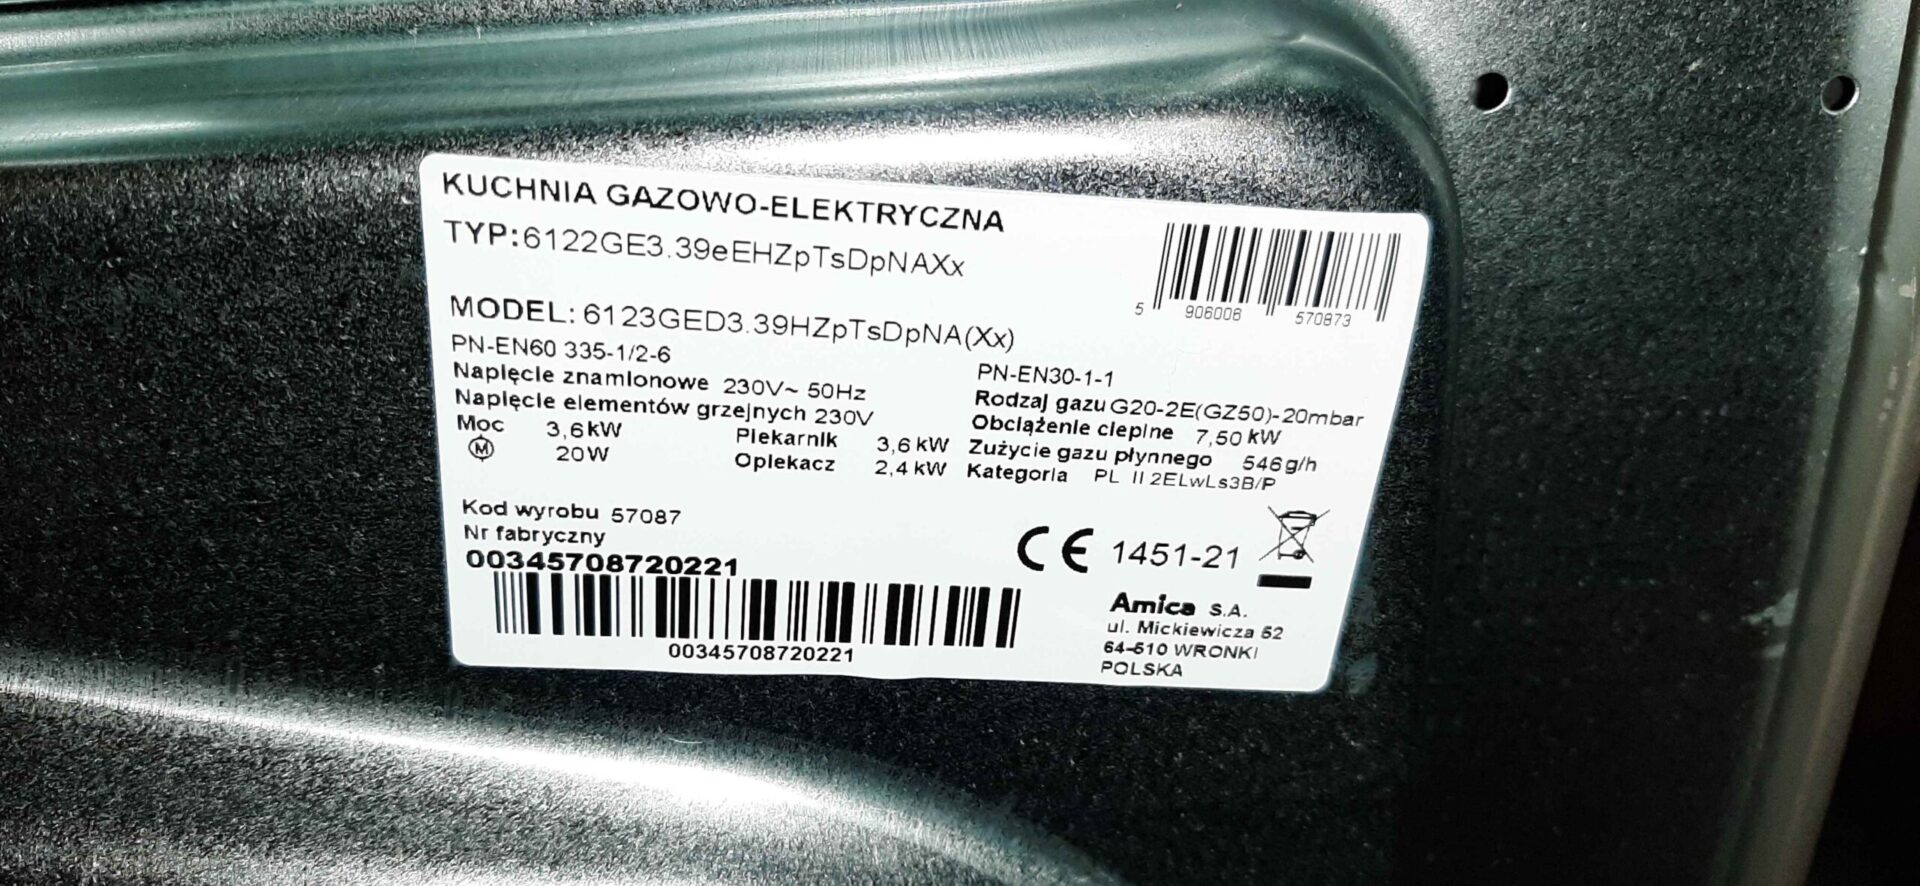 Tabliczka znamionowa kuchenki gazowo-elektrycznej Amica 6123GED3.39HZPTSDPNA(XX)